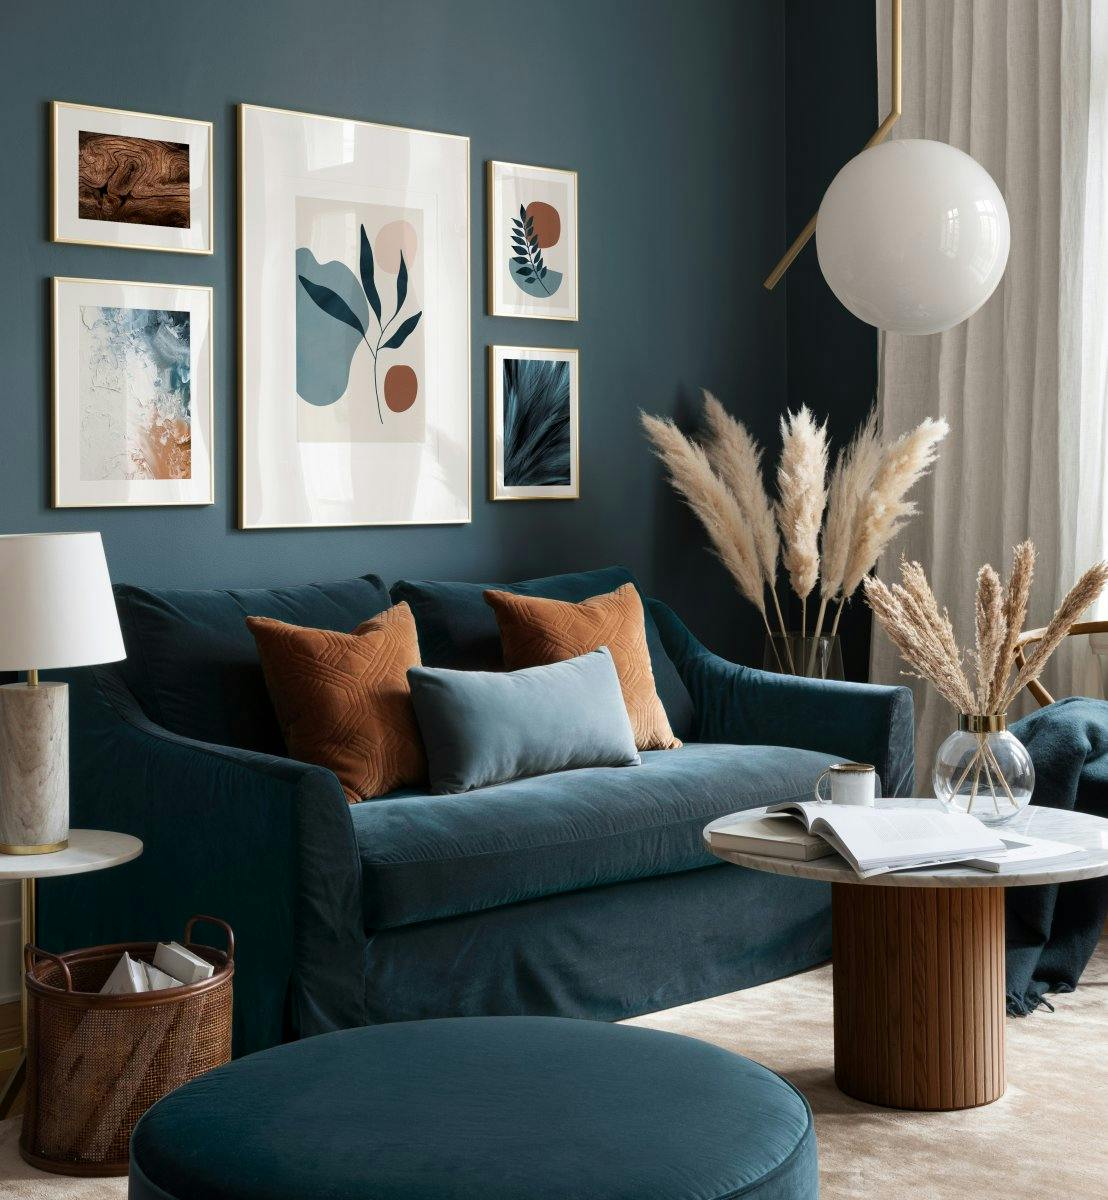 Abstraktit graafiset julisteet ja sinivihreät taidejulisteet modernissa olohuoneessa